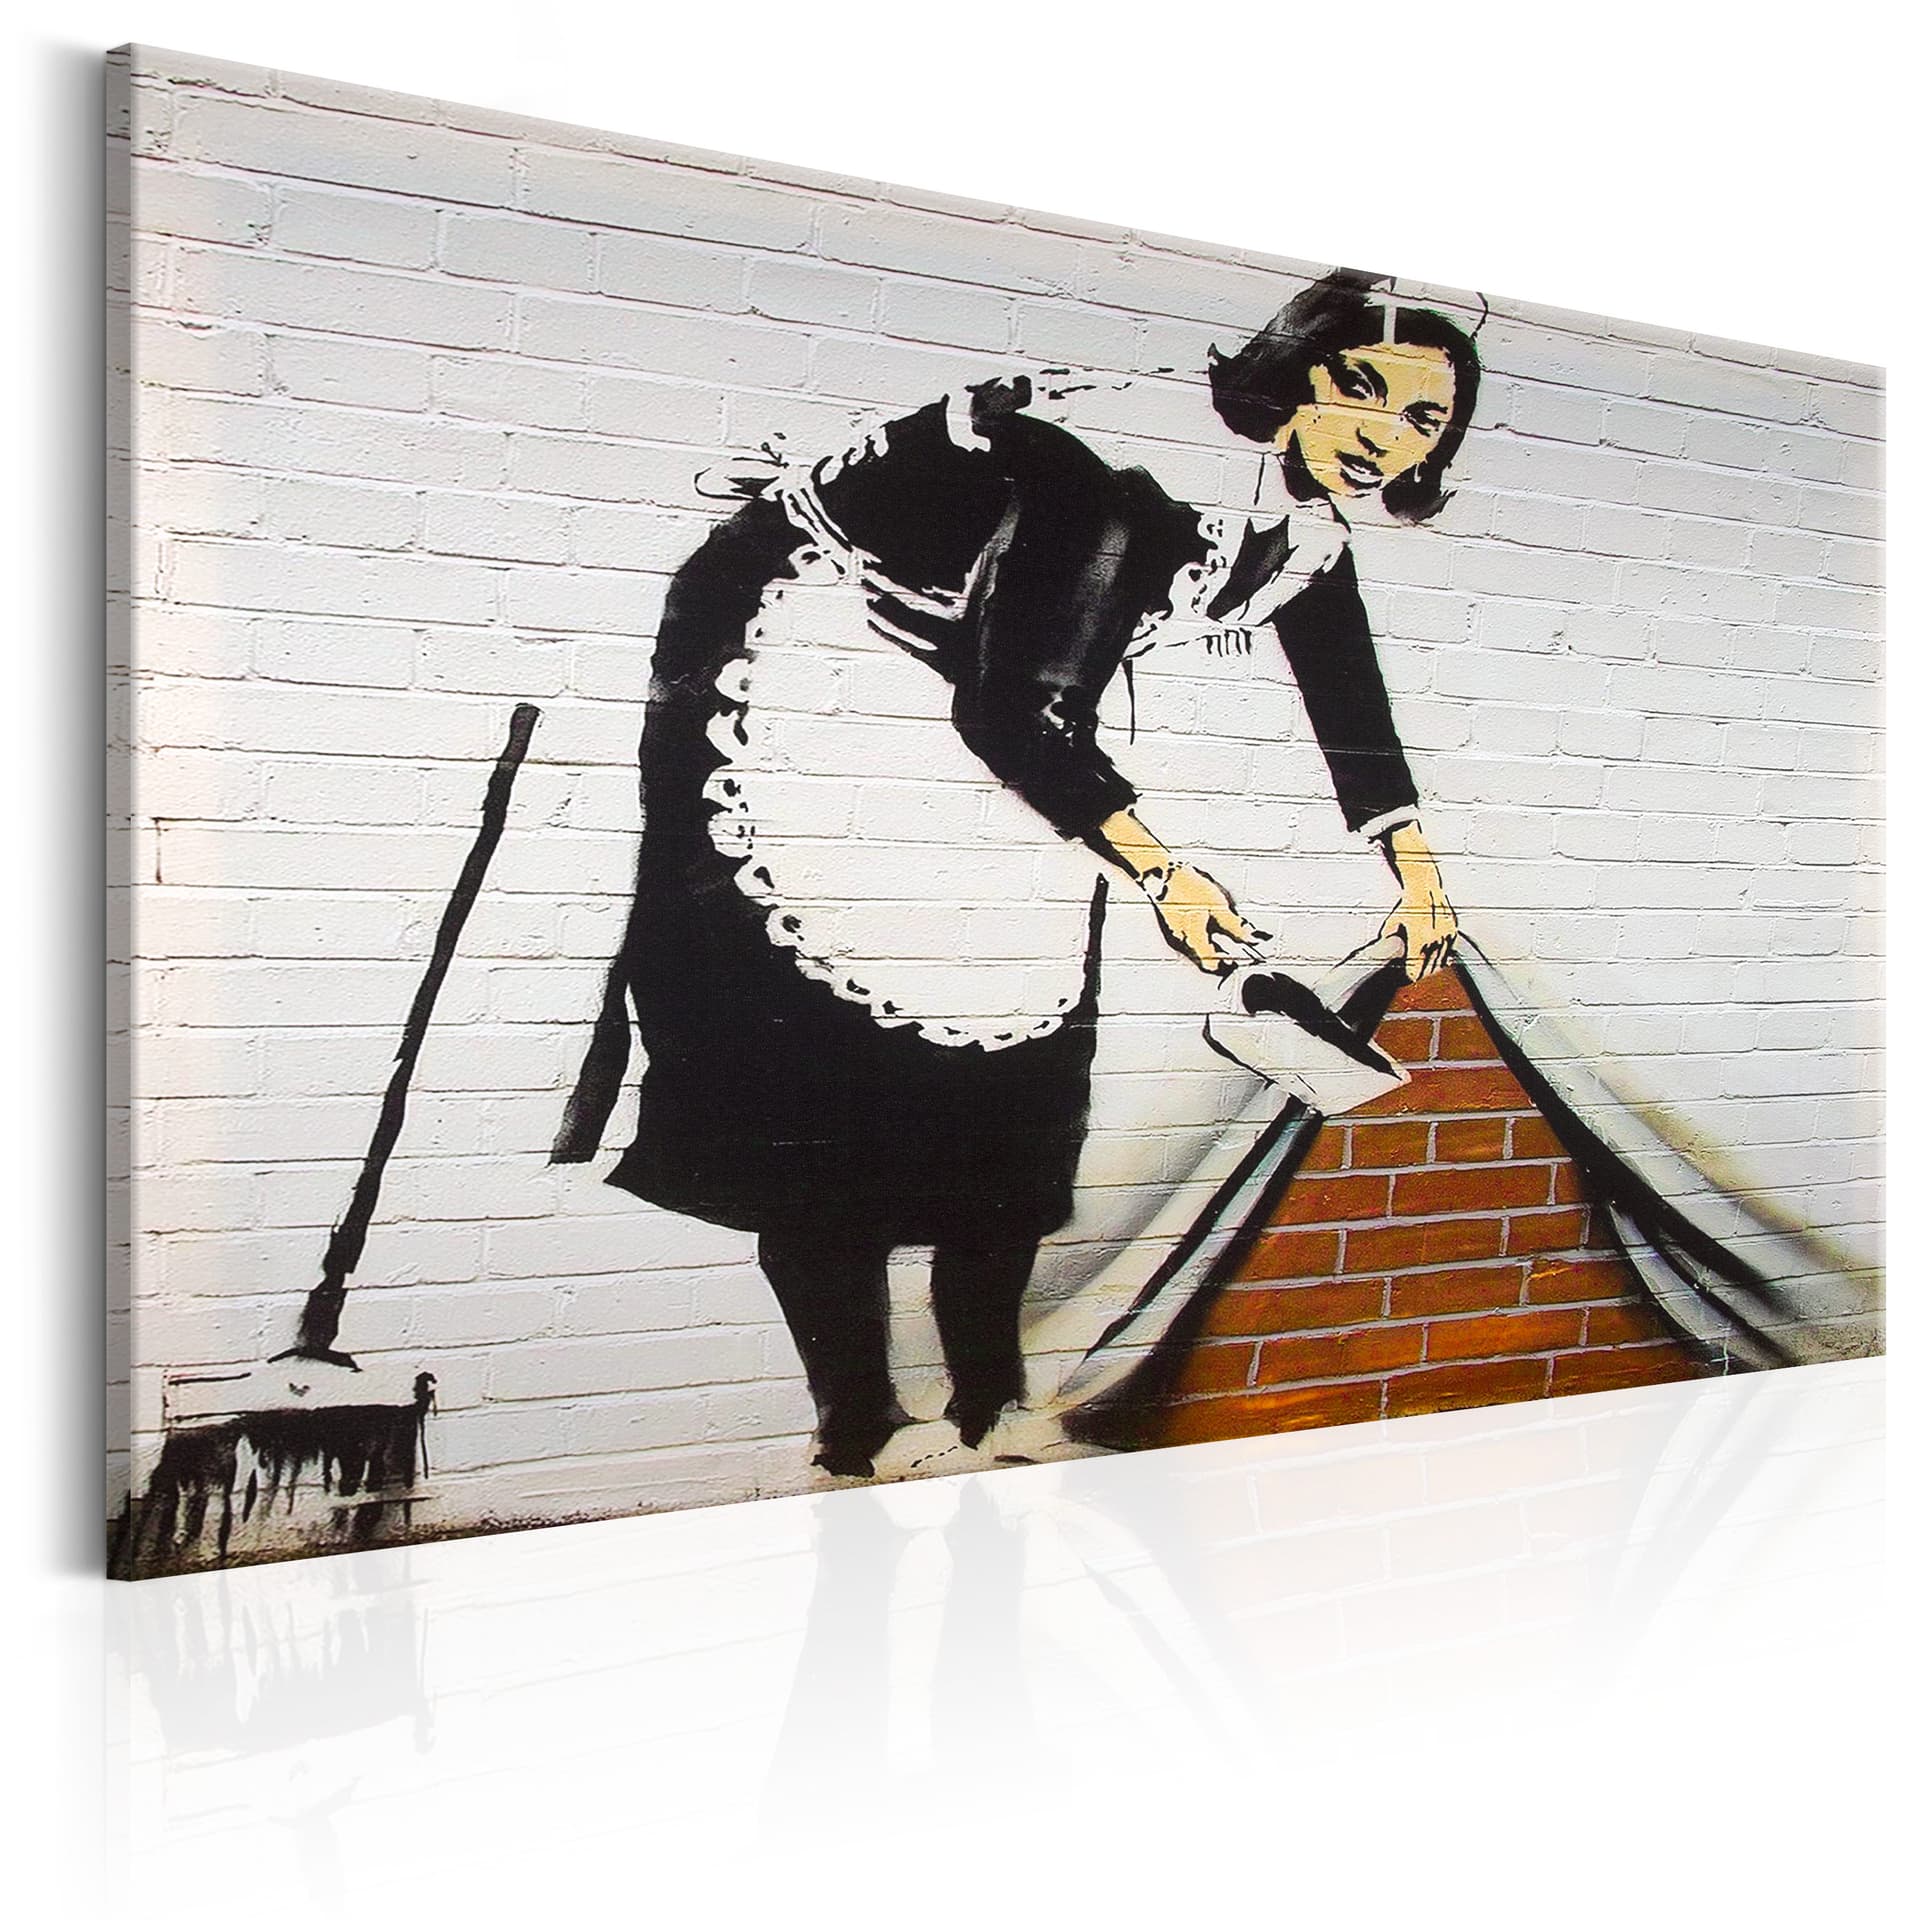 Obraz - Maid in London by Banksy (rozmiar 120x80)